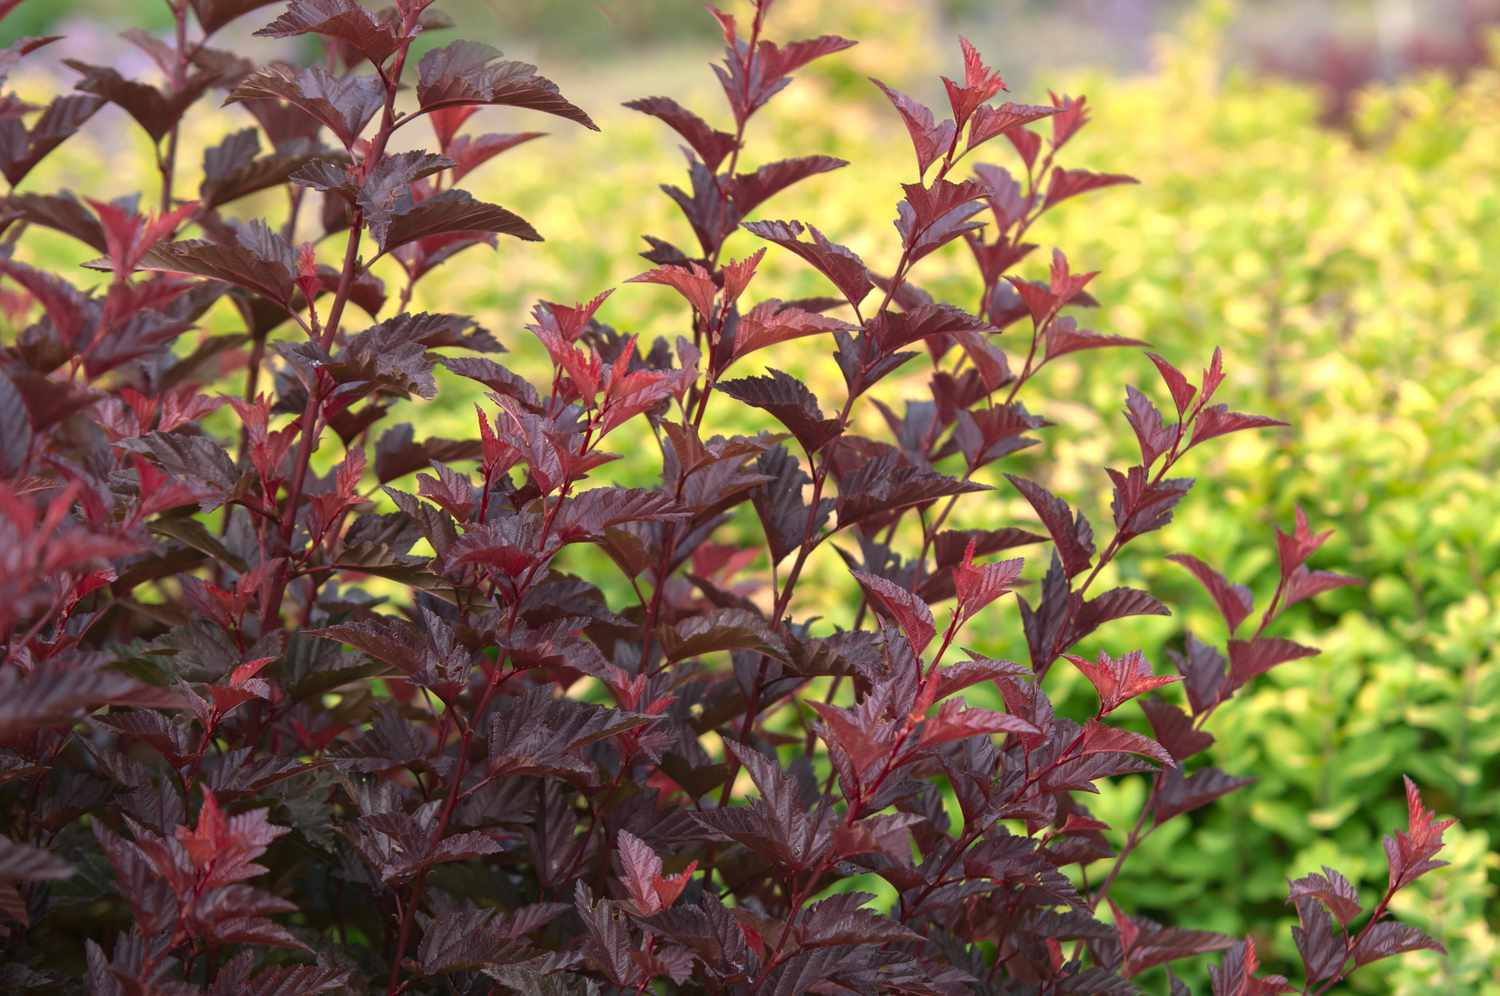 Stängel der Diablo-Neunrindenpflanze mit dunkelroten und violetten Blättern vor grünen Pflanzen